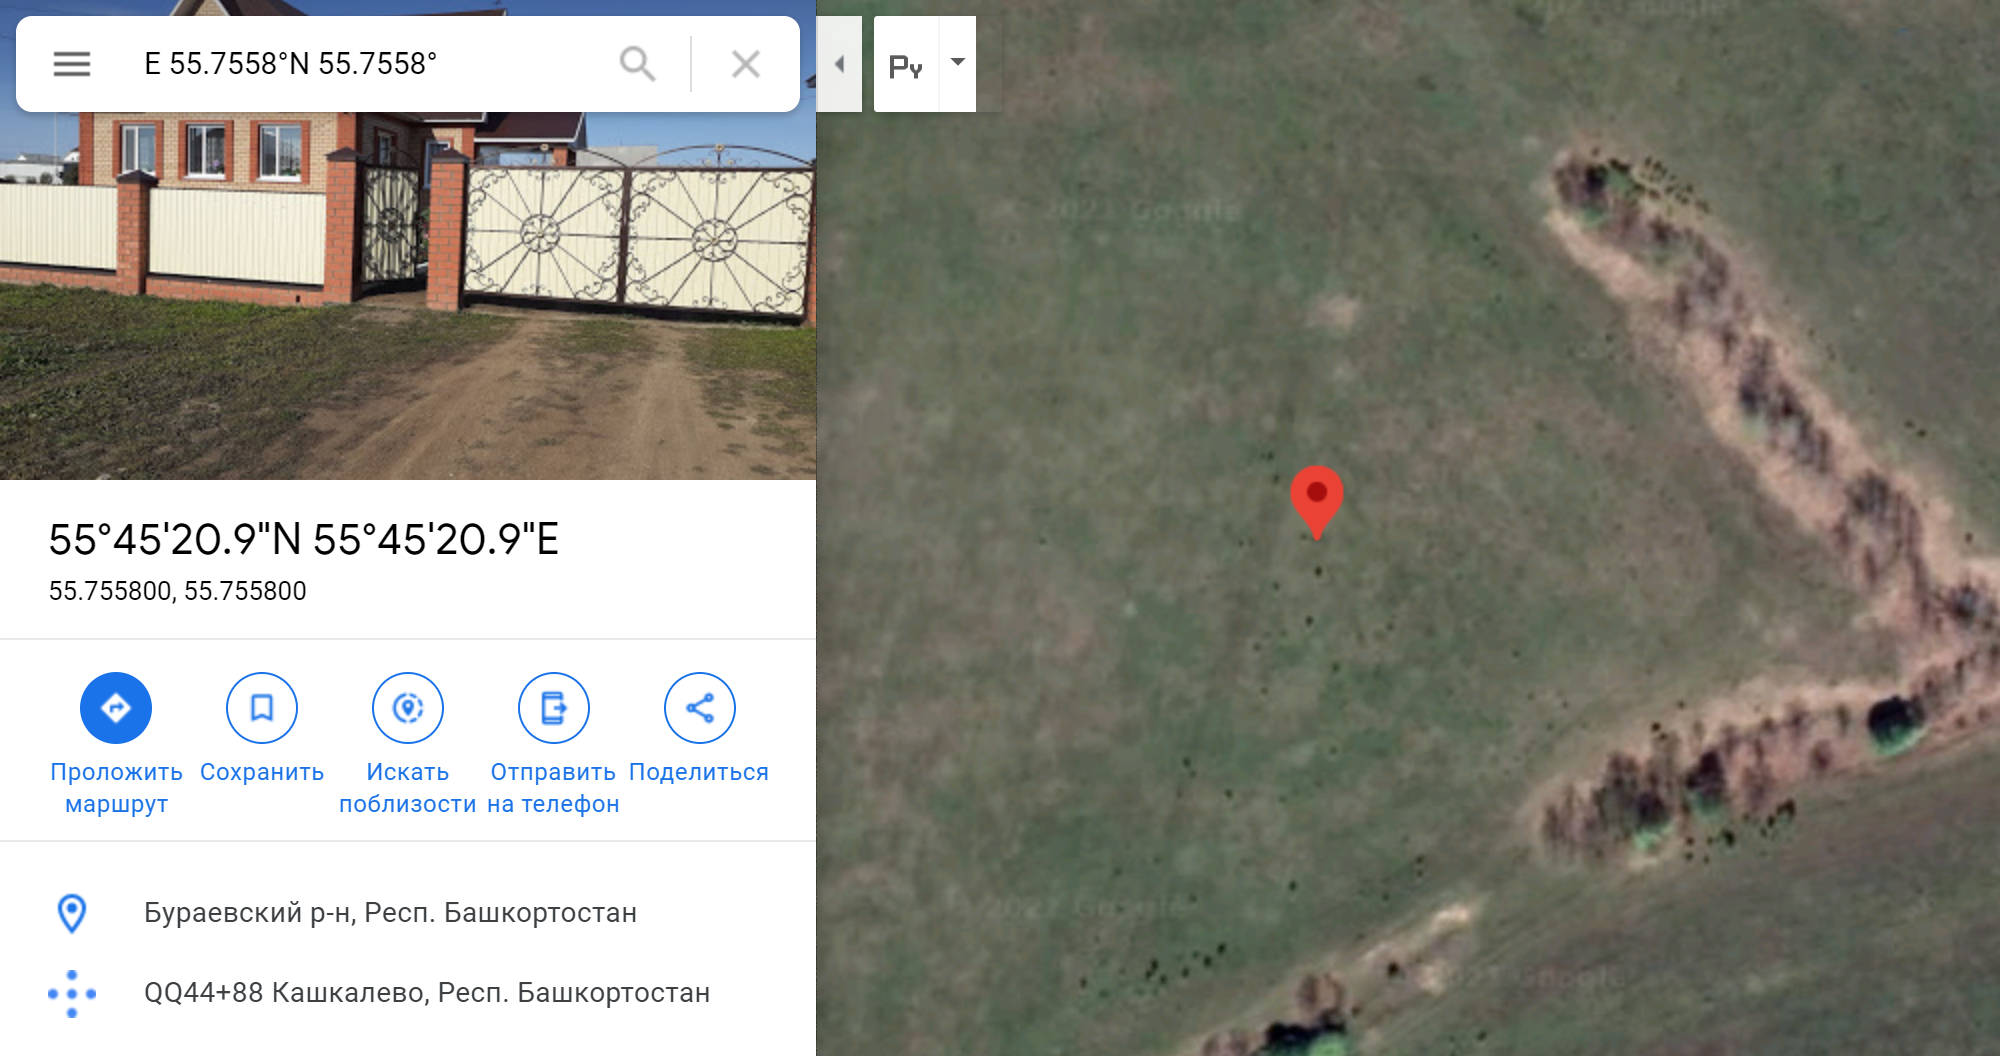 Хотя точка, координаты которой выдал сайт, почему⁠-⁠то находится не в Ярославле, а в Бураевском районе Башкирии